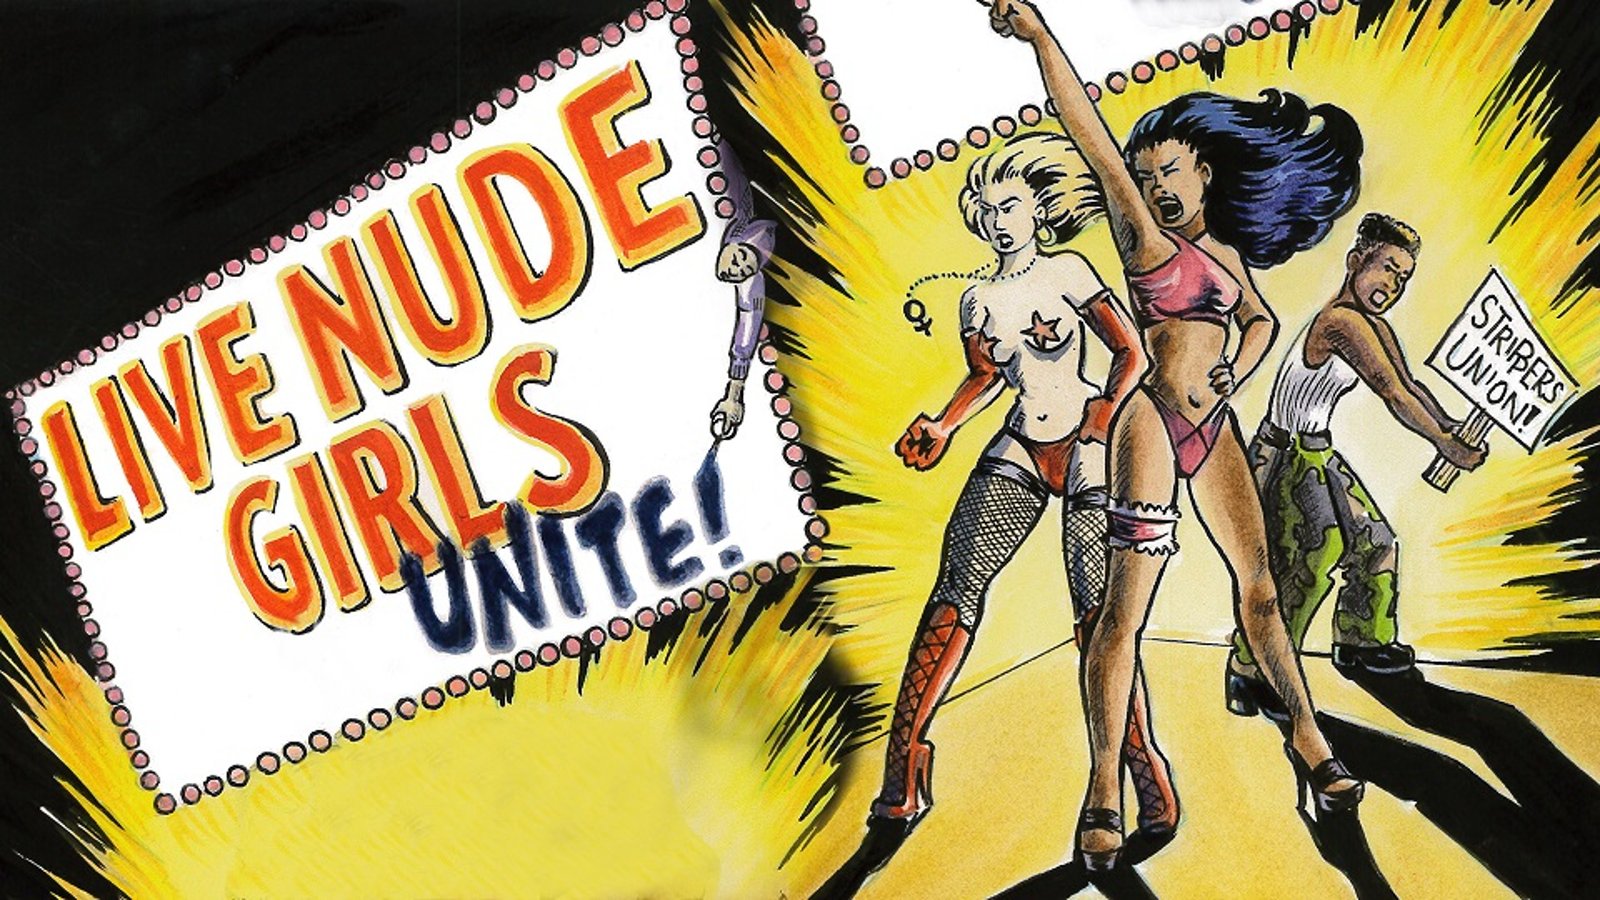 Live Nude Girls Unite!